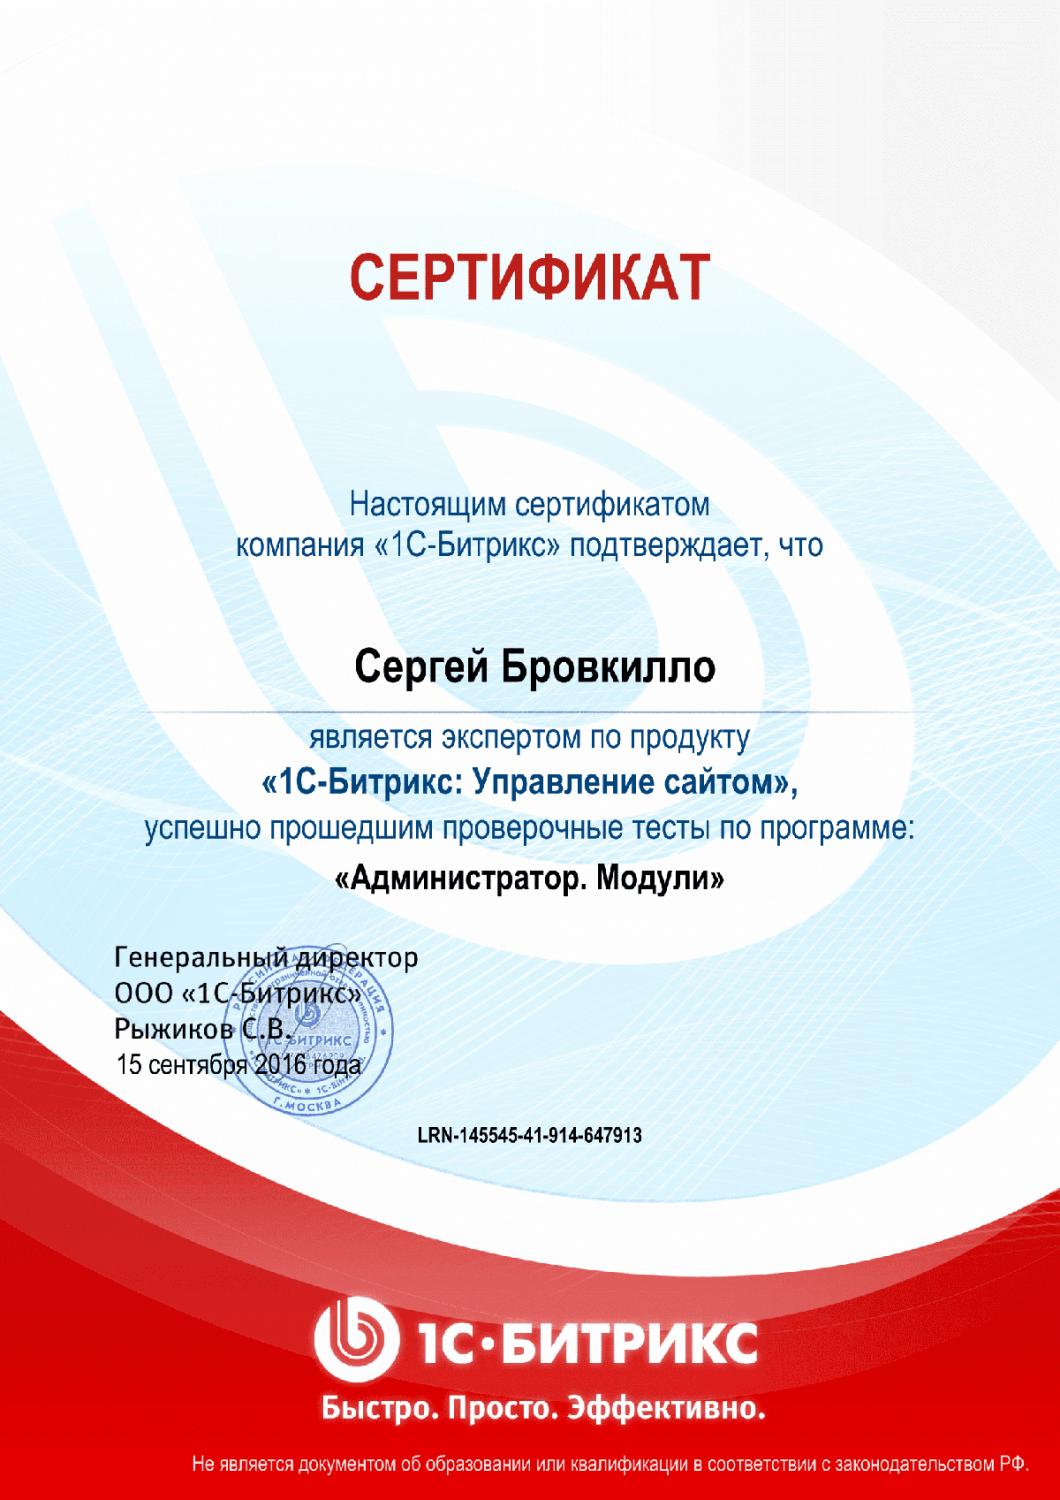 Сертификат эксперта по программе "Администратор. Модули" в Чебоксар